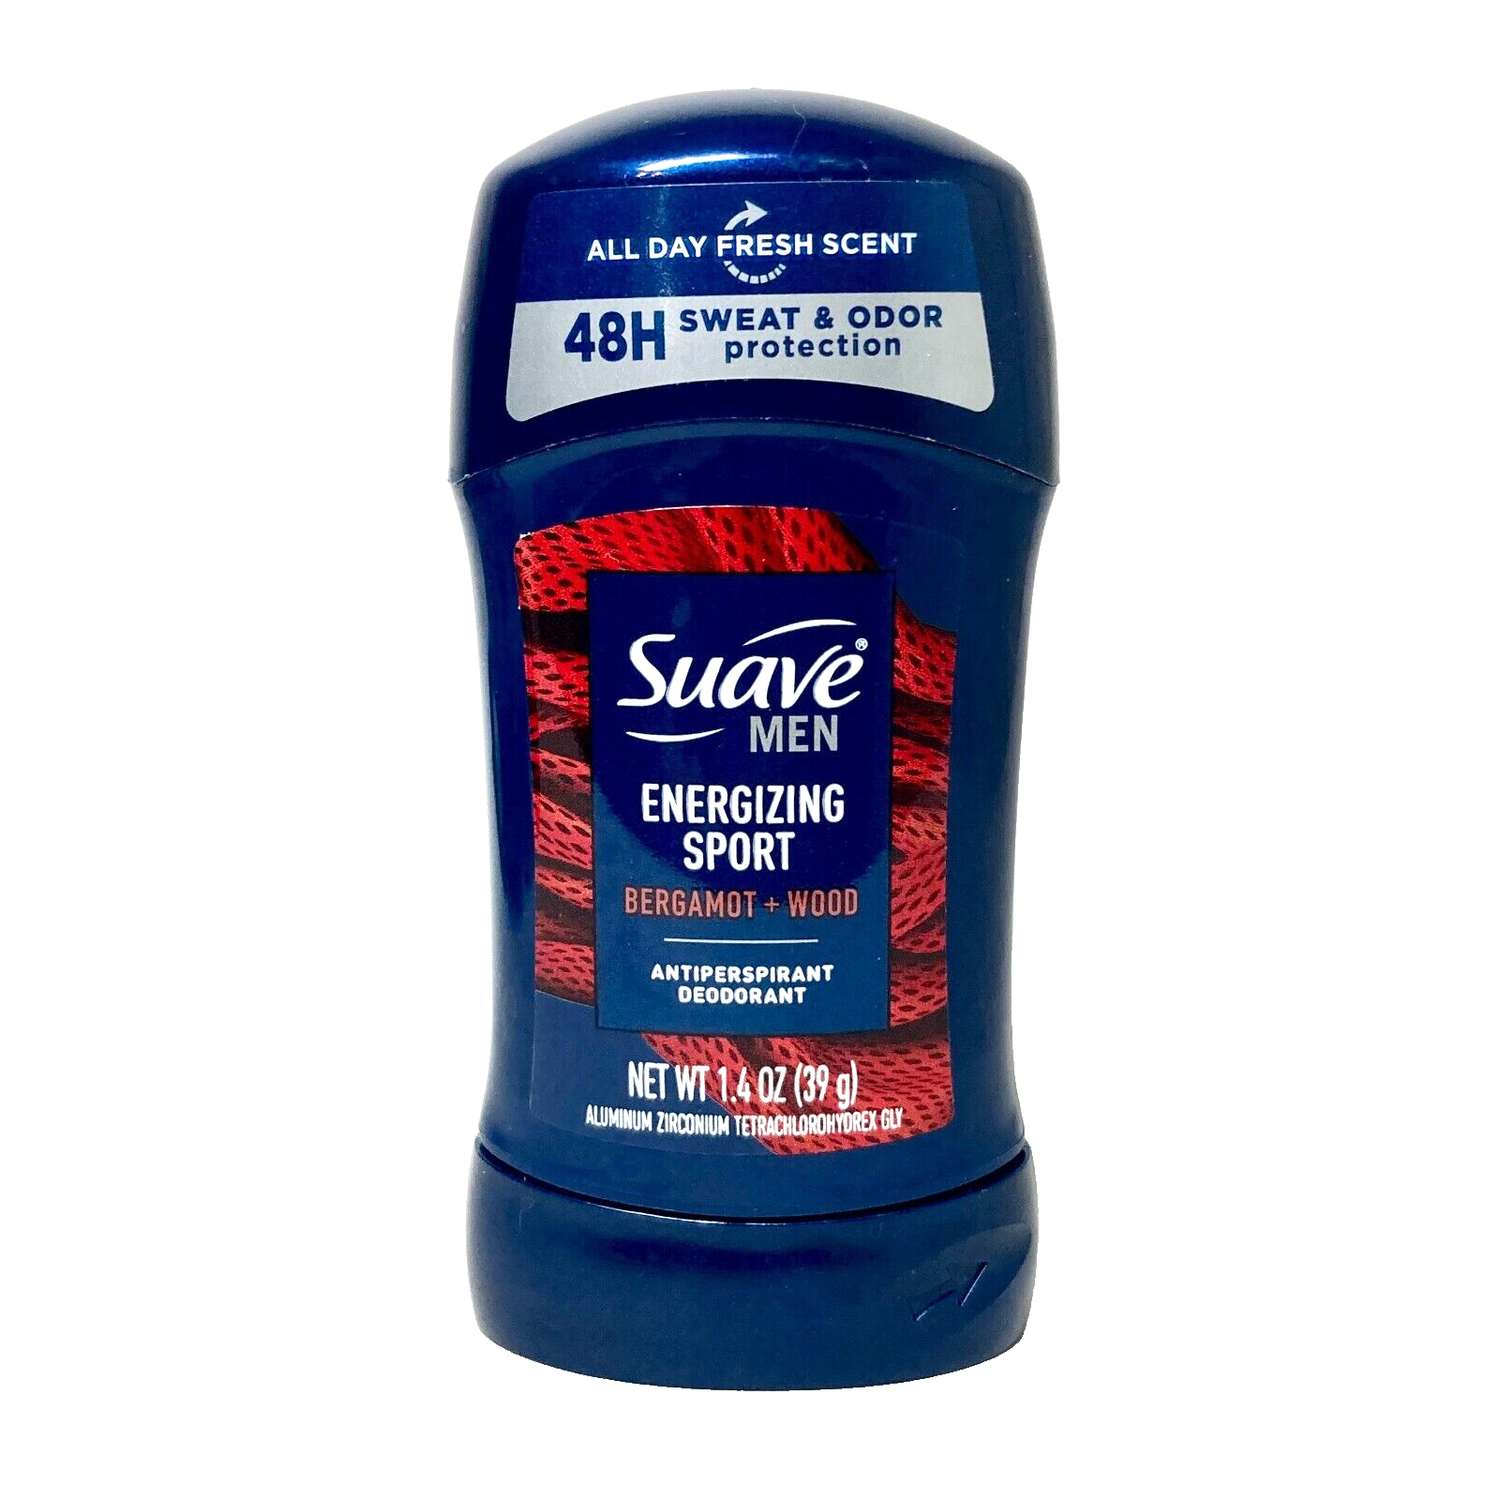 Suave Men Active Energizing Antiperspirant Deodorant 1.4oz